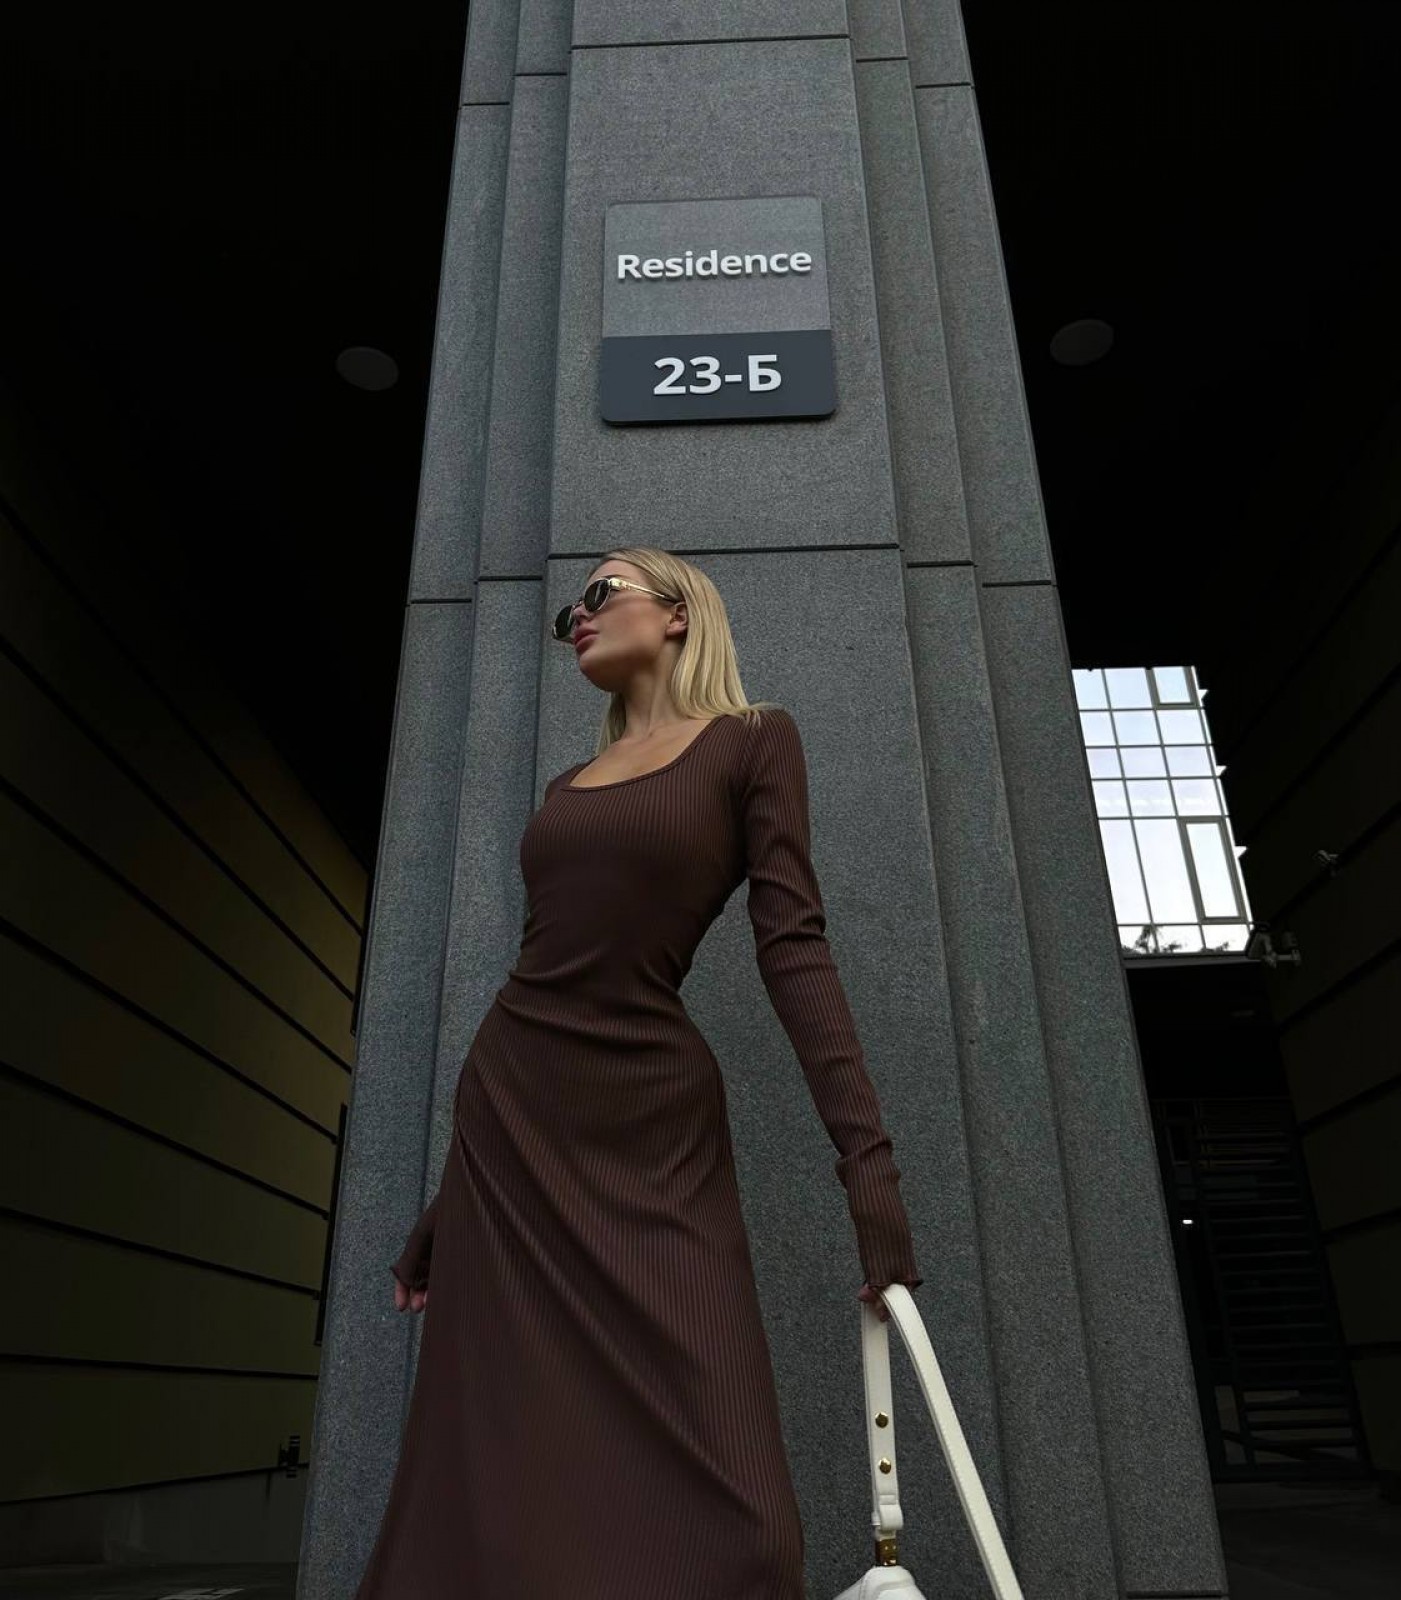 Жіноча базова трикотажна сукня колір шоколад р.42/46 446398